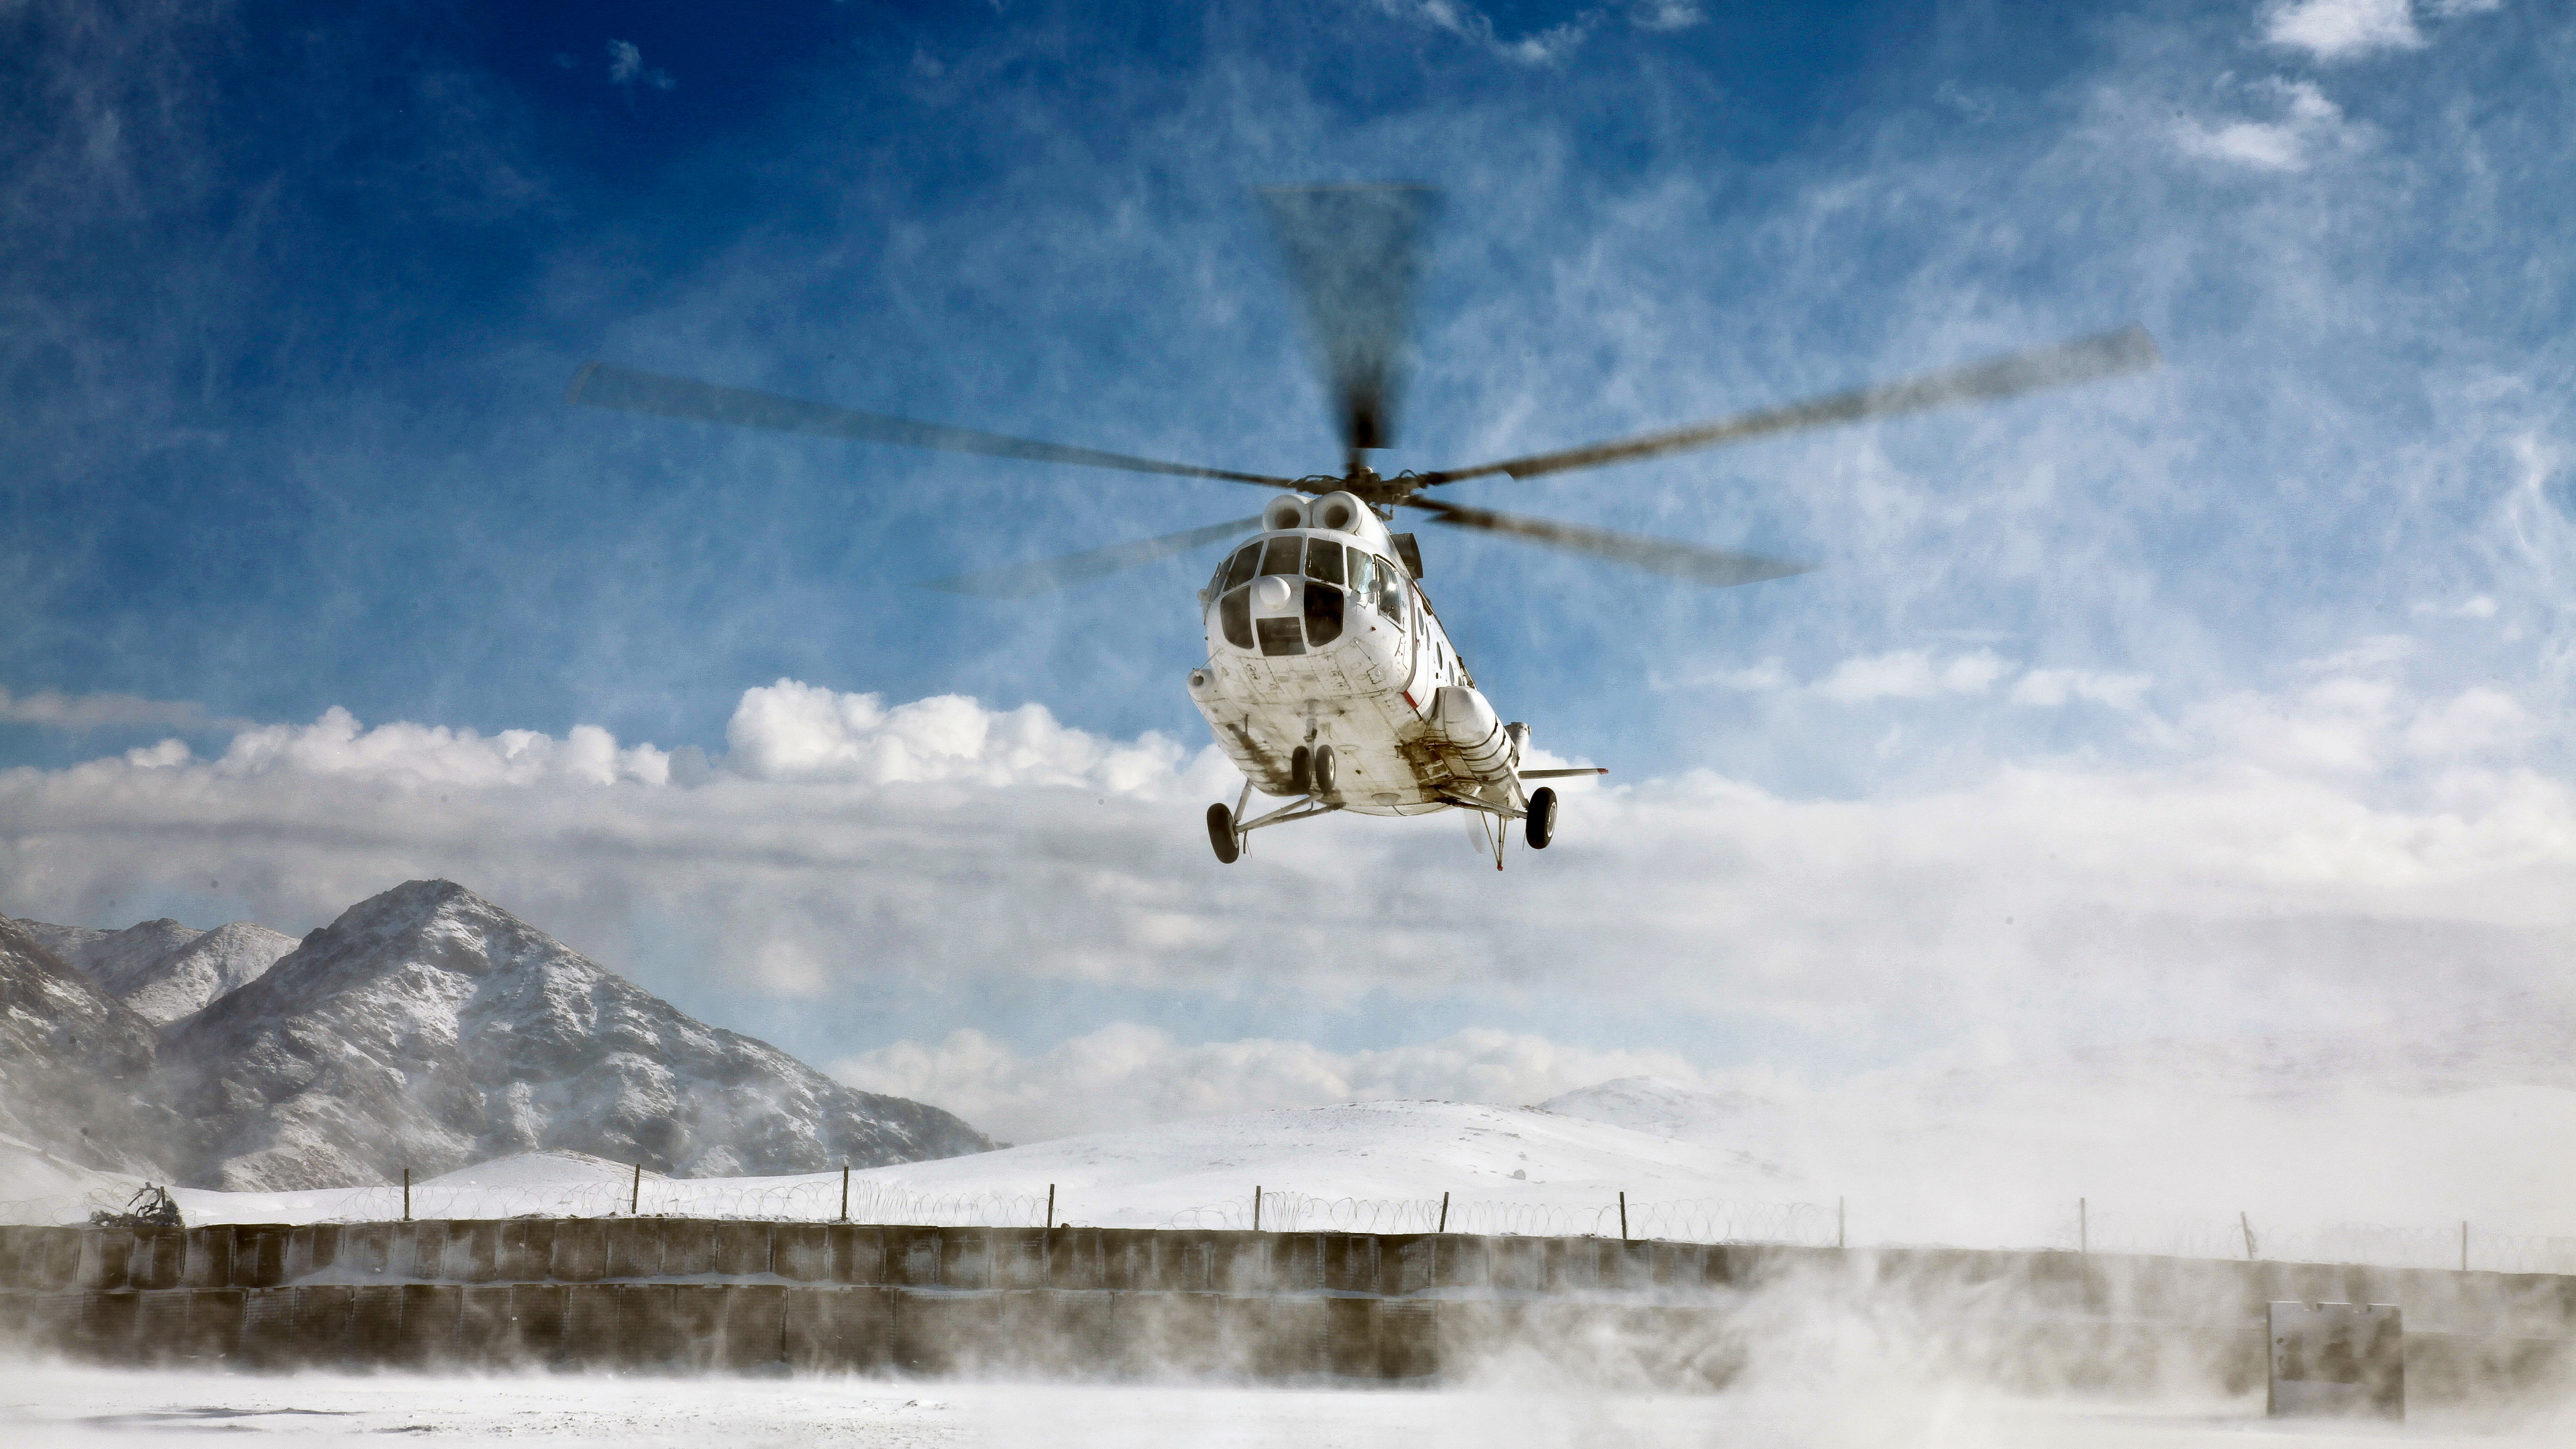 直升机, 旋翼飞机, 直升机转子的, 军用直升机, 航空 壁纸 3840x2160 允许